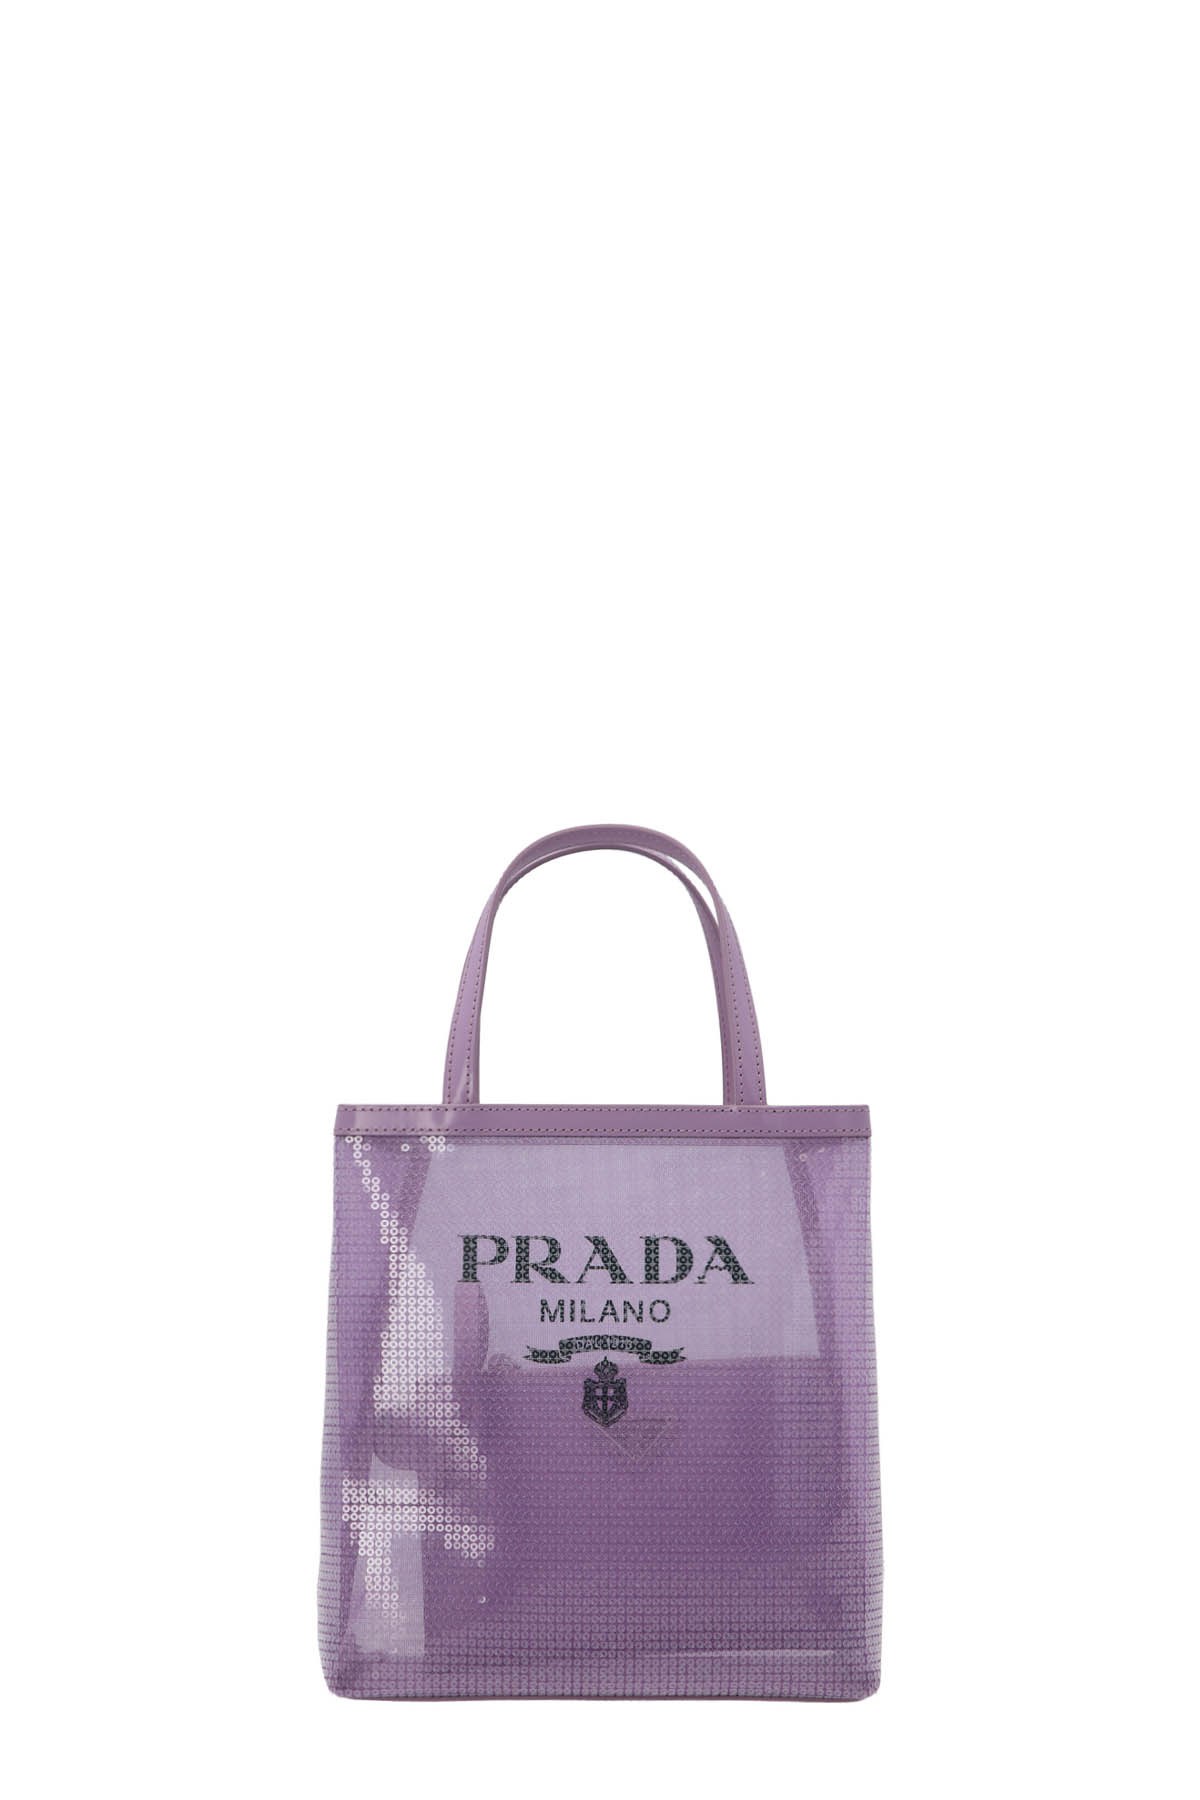 PRADA Small Sequin Shopping Bag